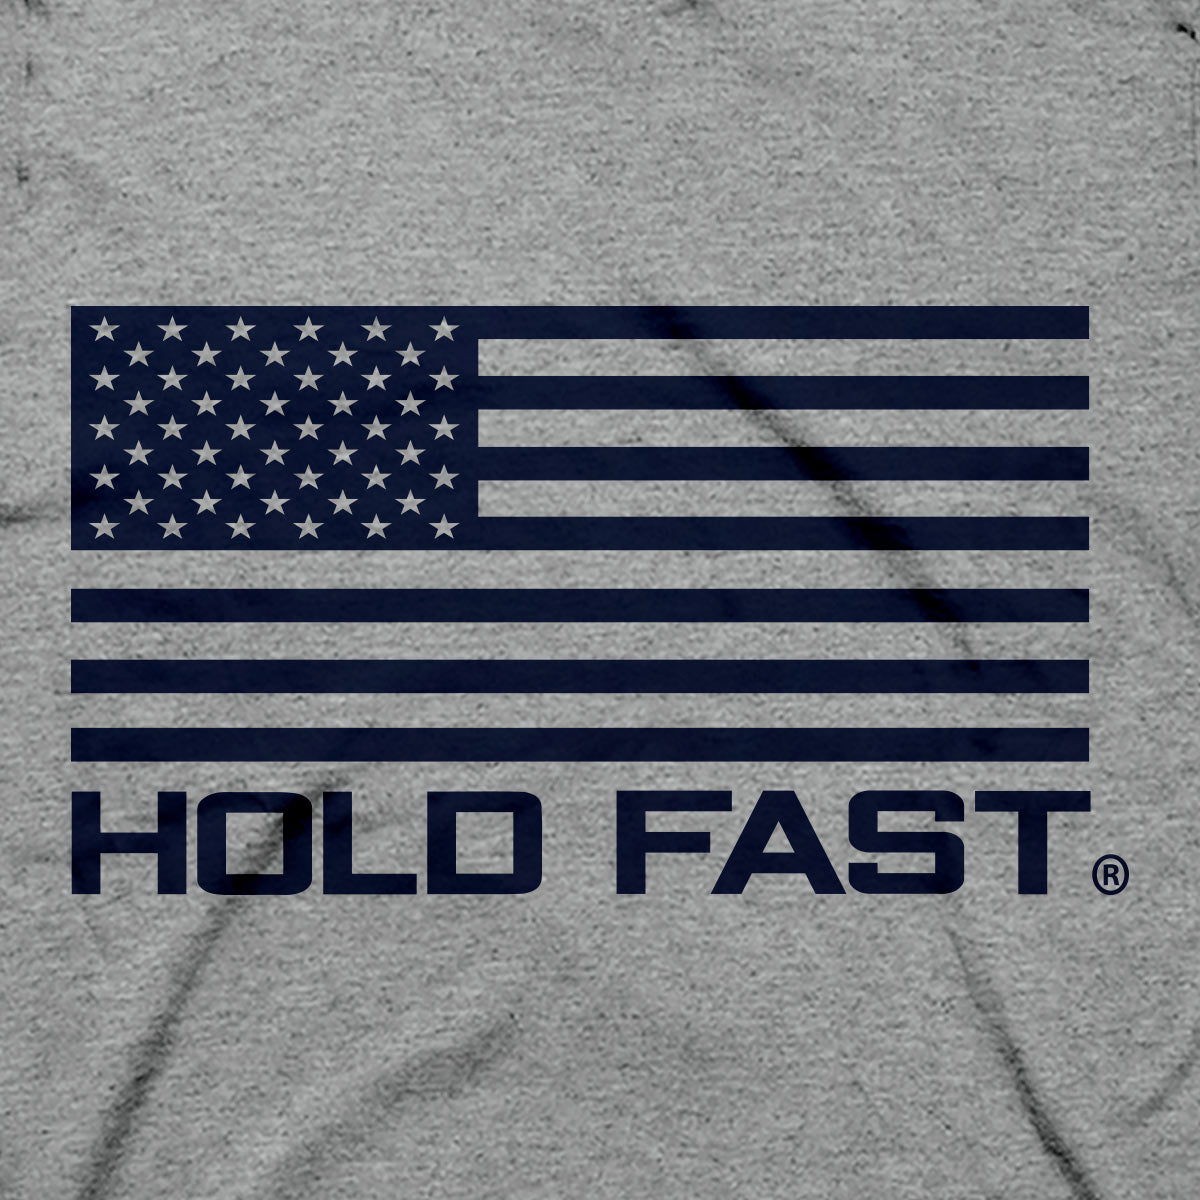 HOLD FAST Mens T-Shirt God Bless America Scene | 2FruitBearers